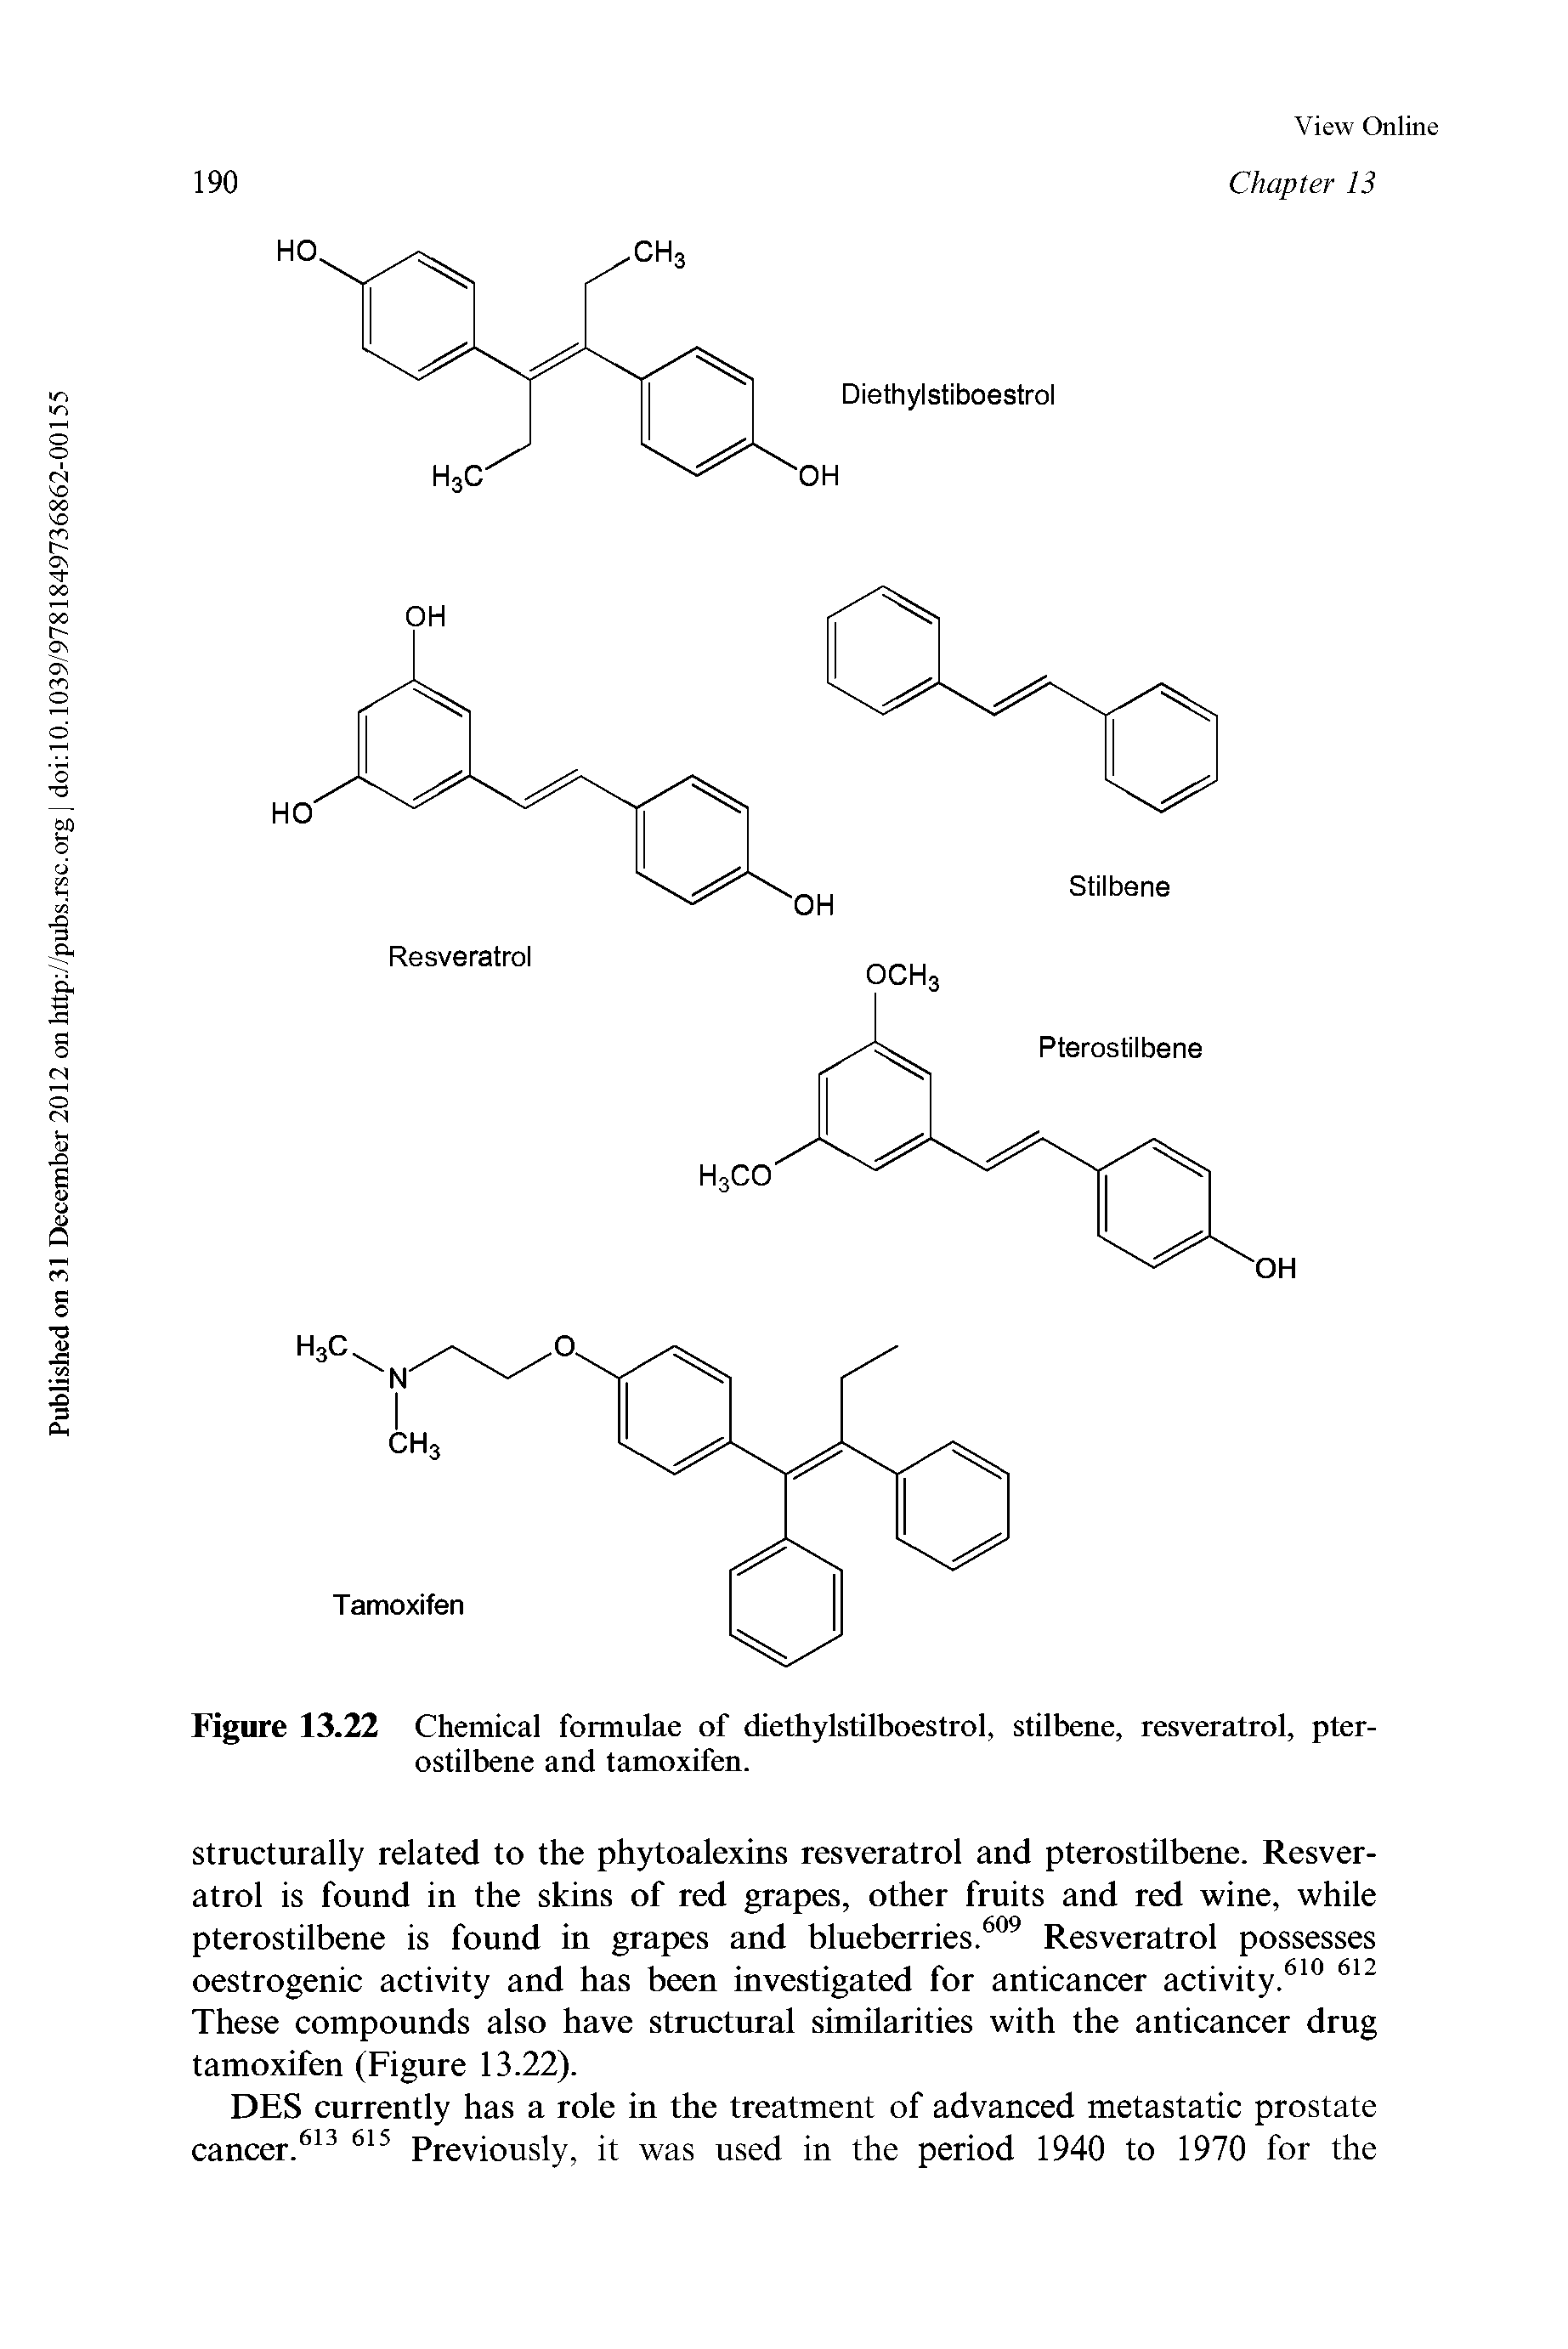 Figure 13.22 Chemical formulae of diethylstilboestrol, stilbene, resveratrol, pterostilbene and tamoxifen.